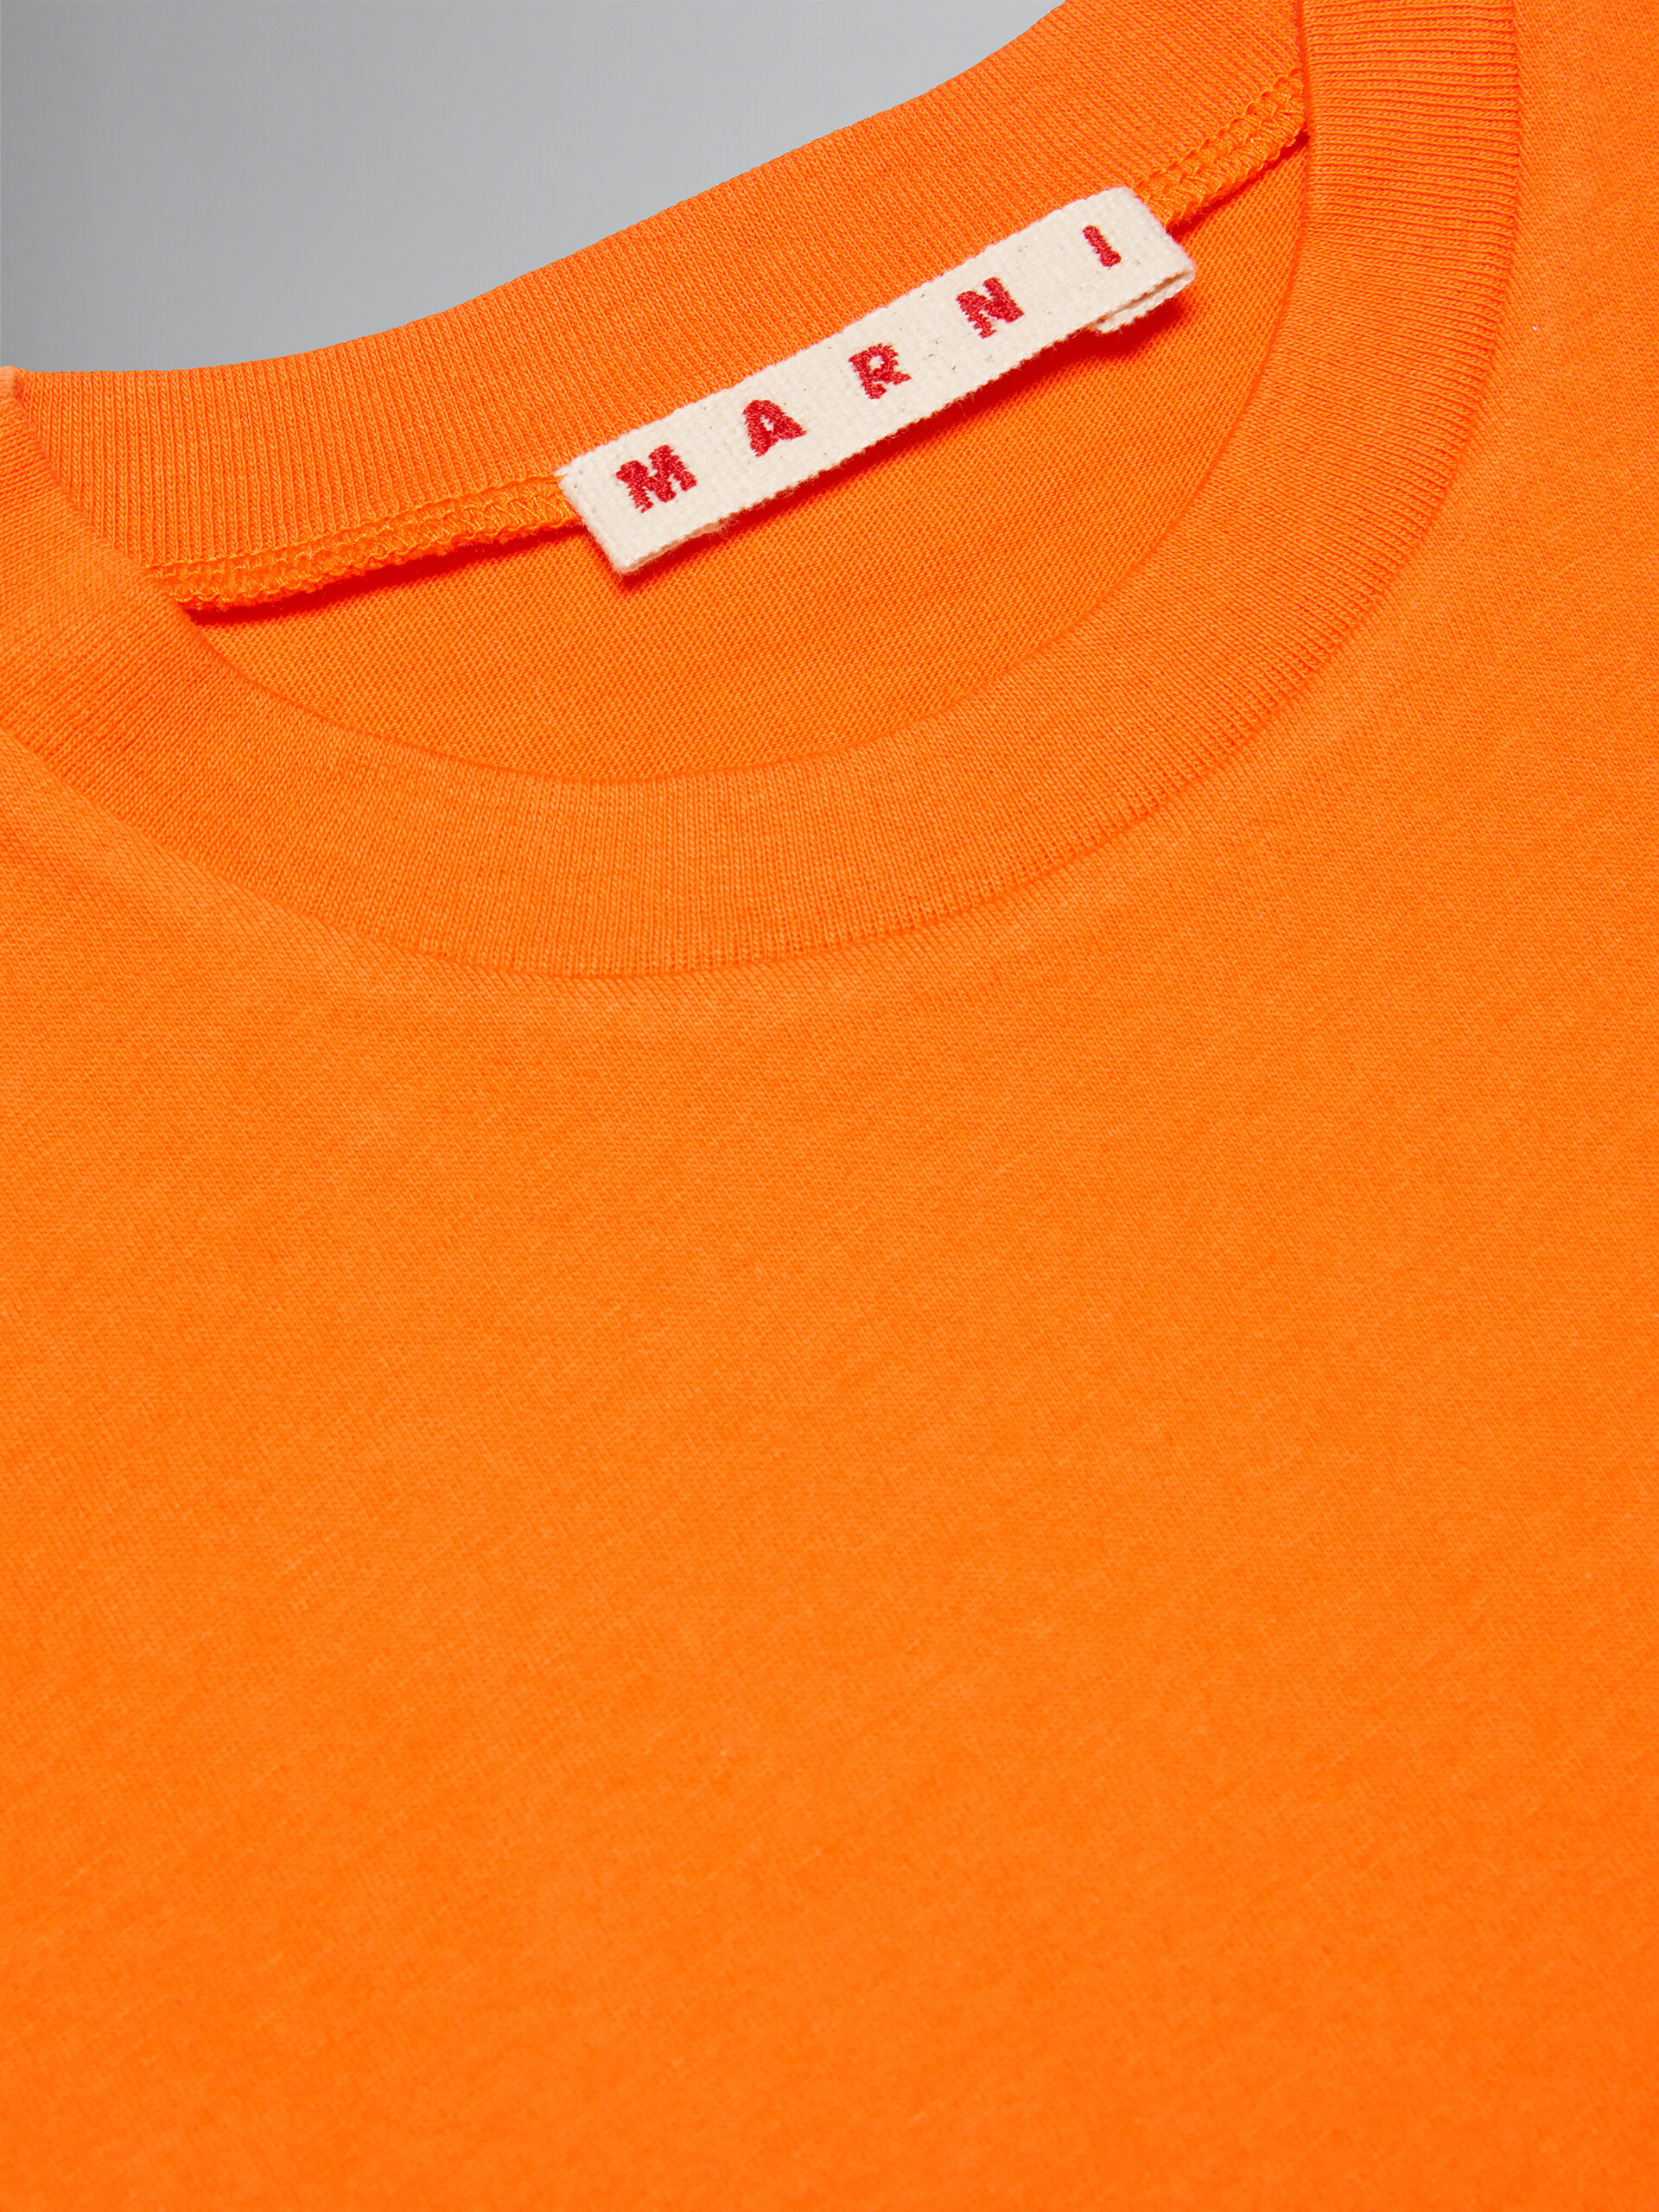 Orange cropped T-shirt with logo - T-shirts - Image 3